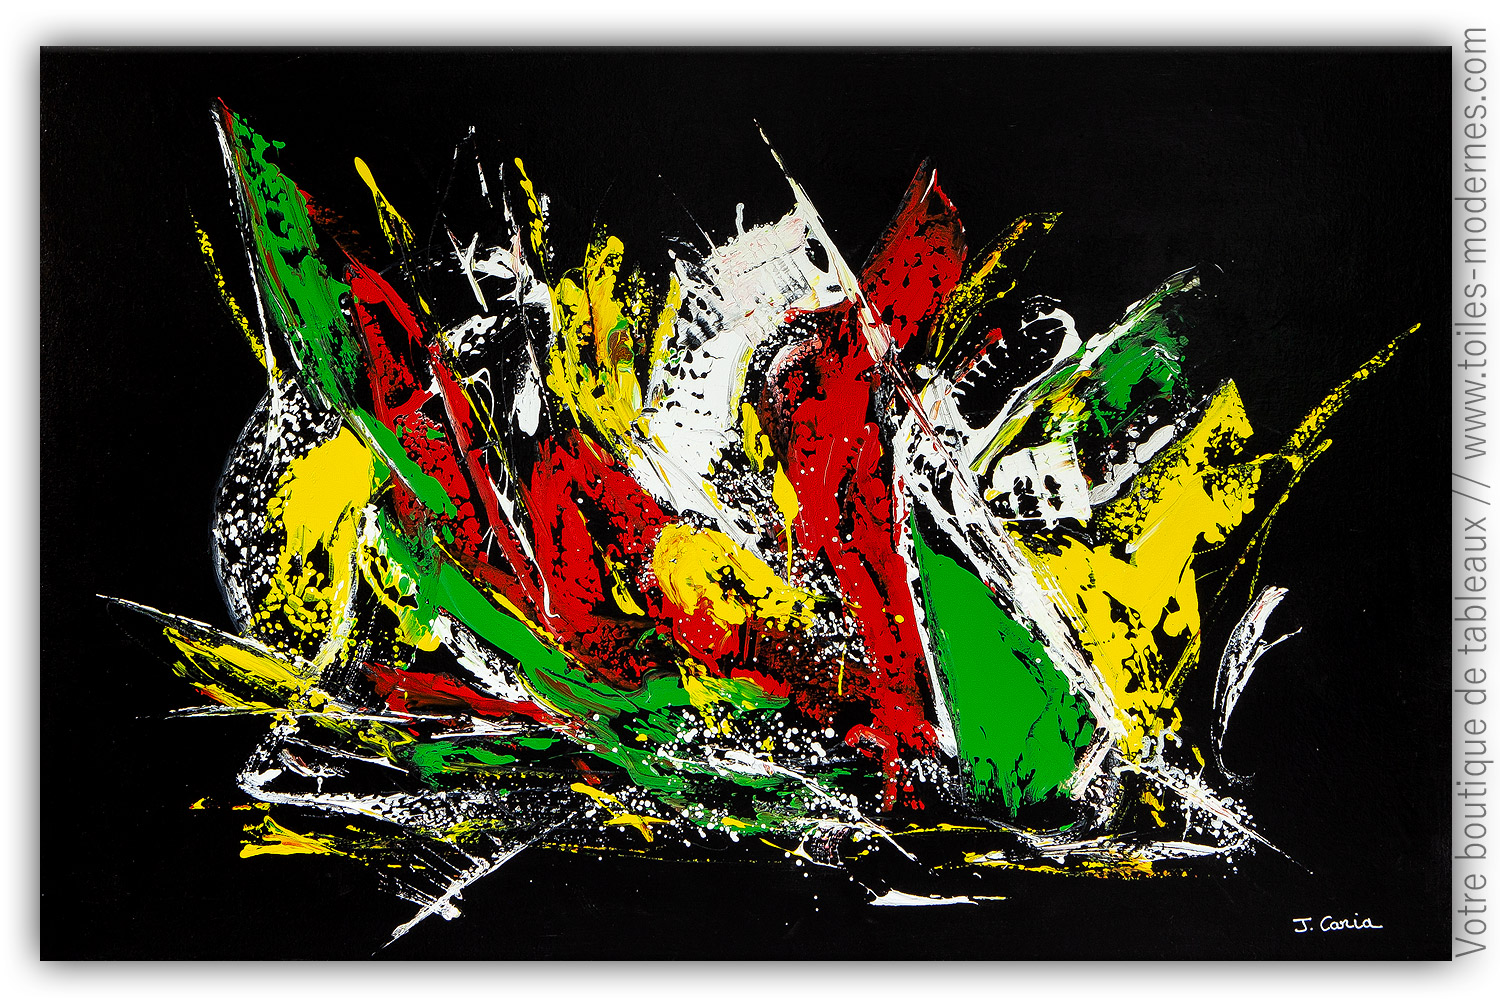 Tableau noir contemporain : Jeu de couleurs